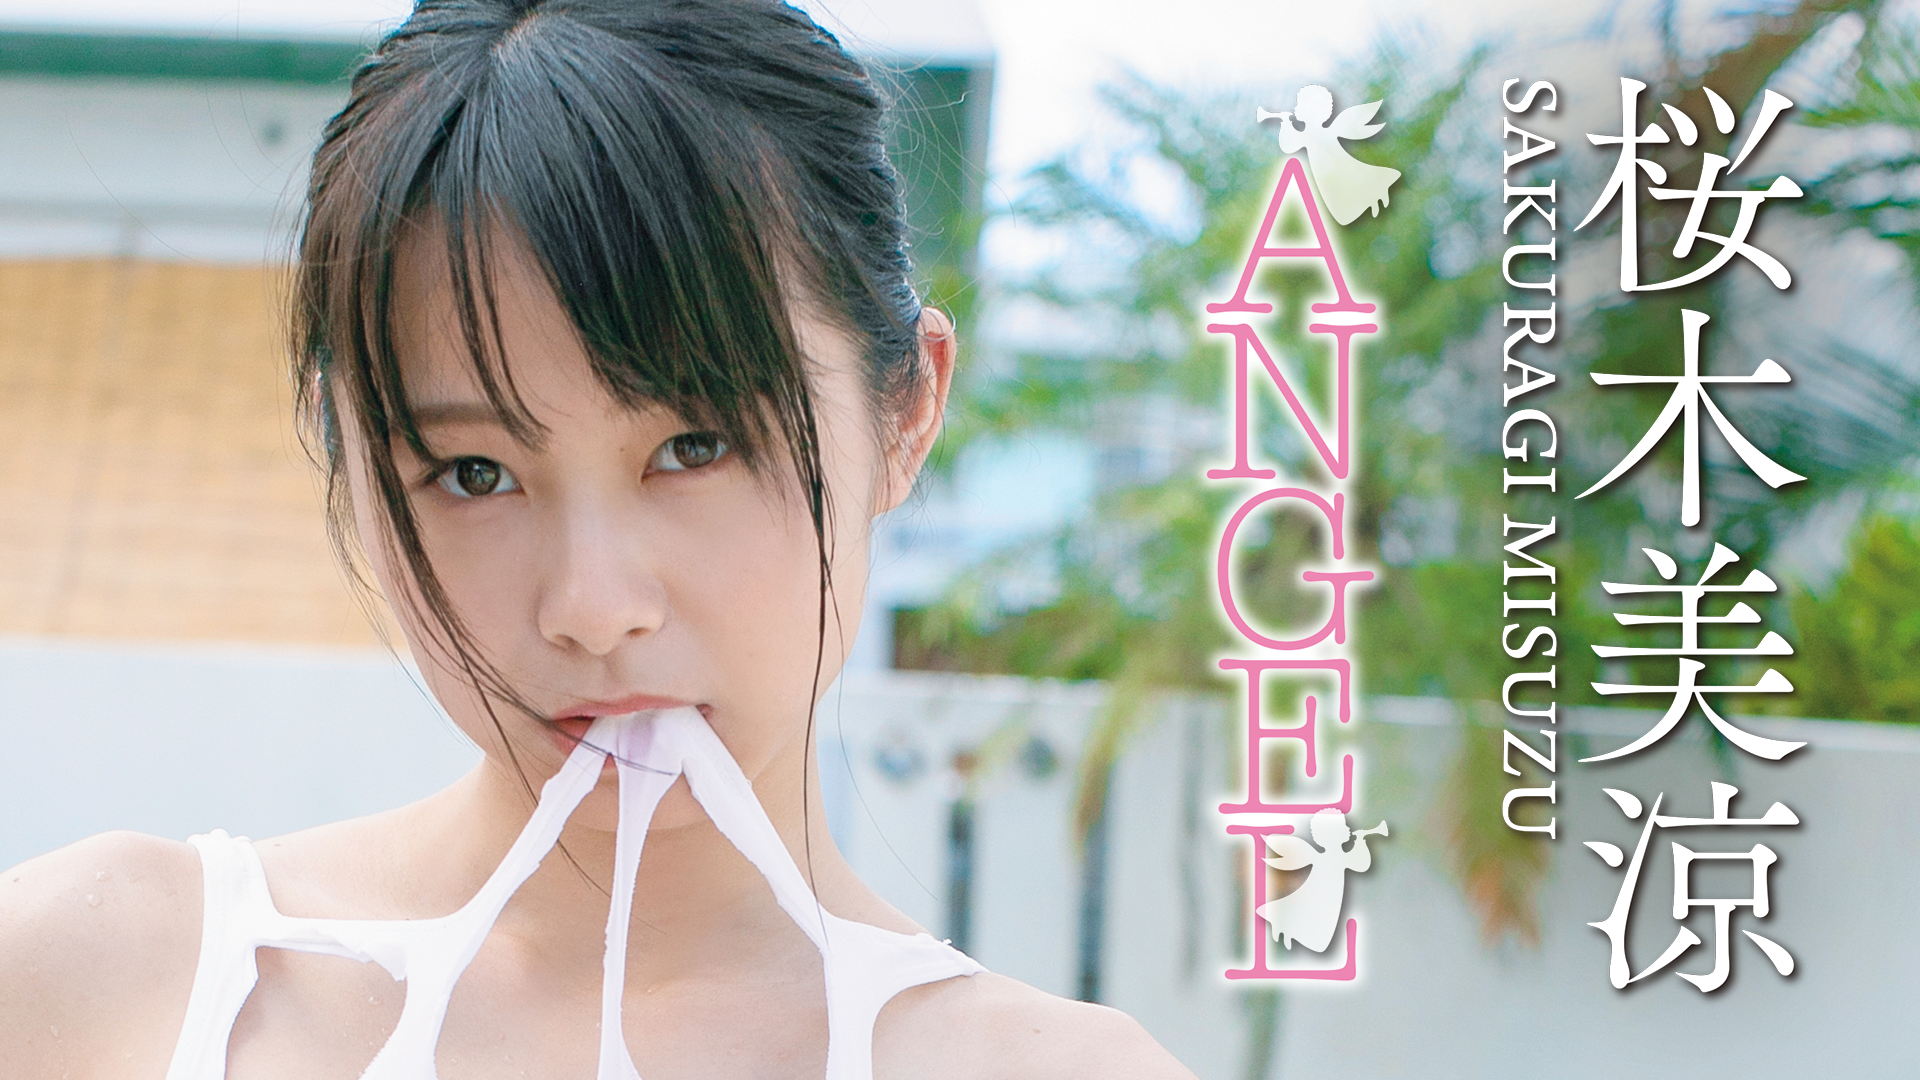 桜木美涼『ANGEL』(その他♡ / 2019) - 動画配信 | U-NEXT 31日間無料 